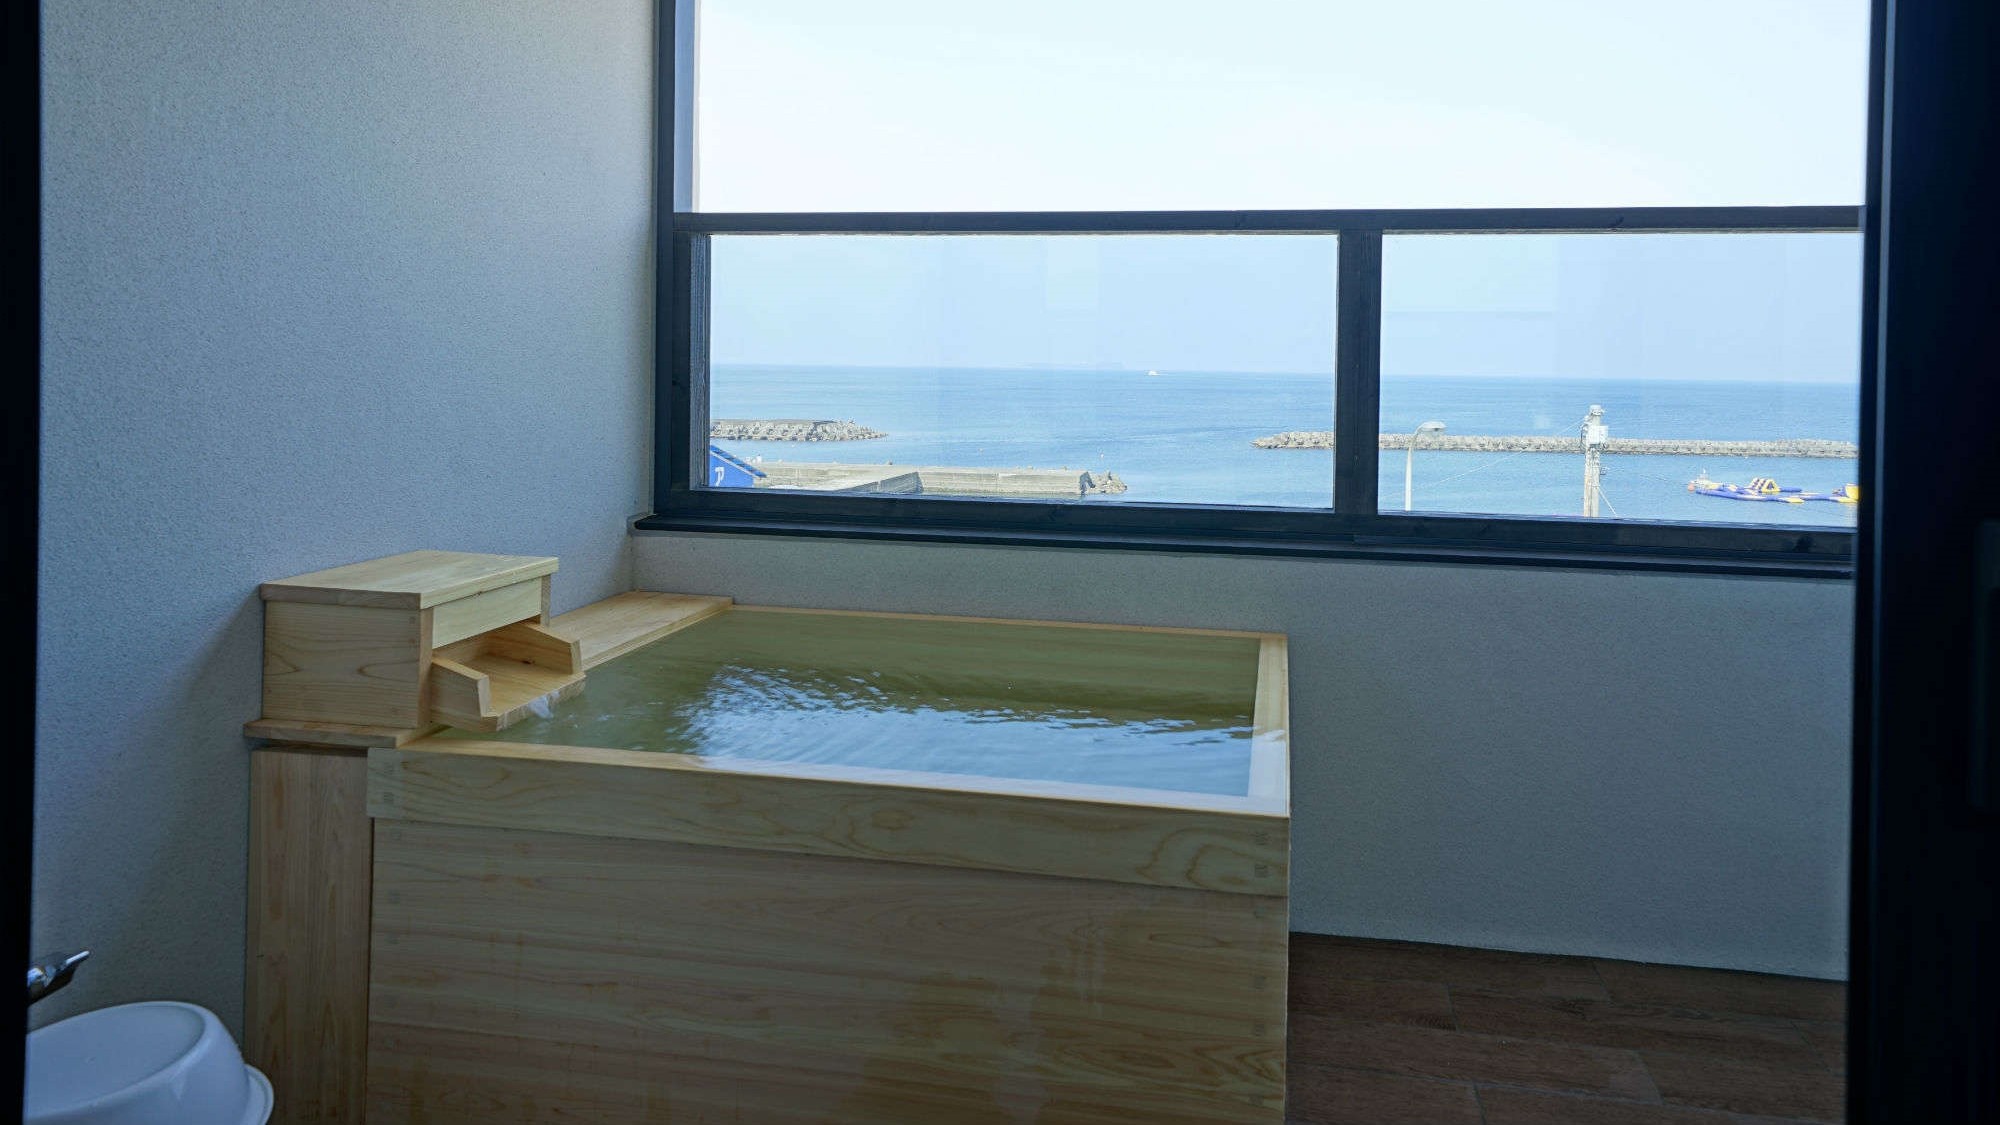  【露天風呂付オーシャンフロントデラックスツイン】海を眺めながらの温泉…;まさに贅沢そのもの♪